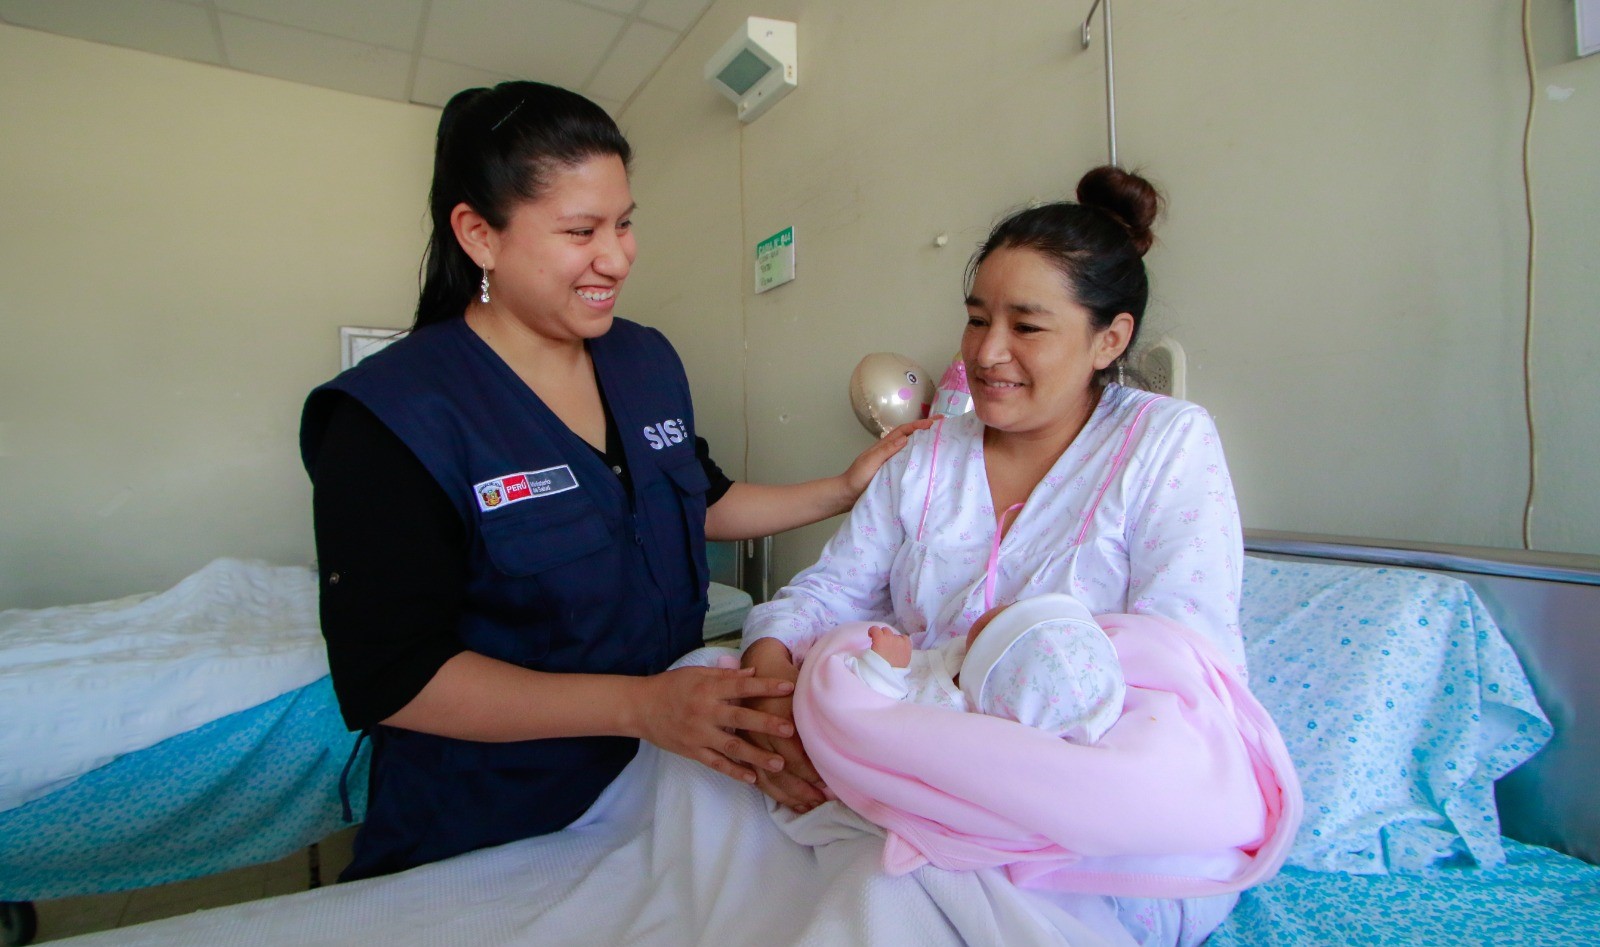 El Seguro Integral de Salud promueve y protege la maternidad saludable, segura y voluntaria